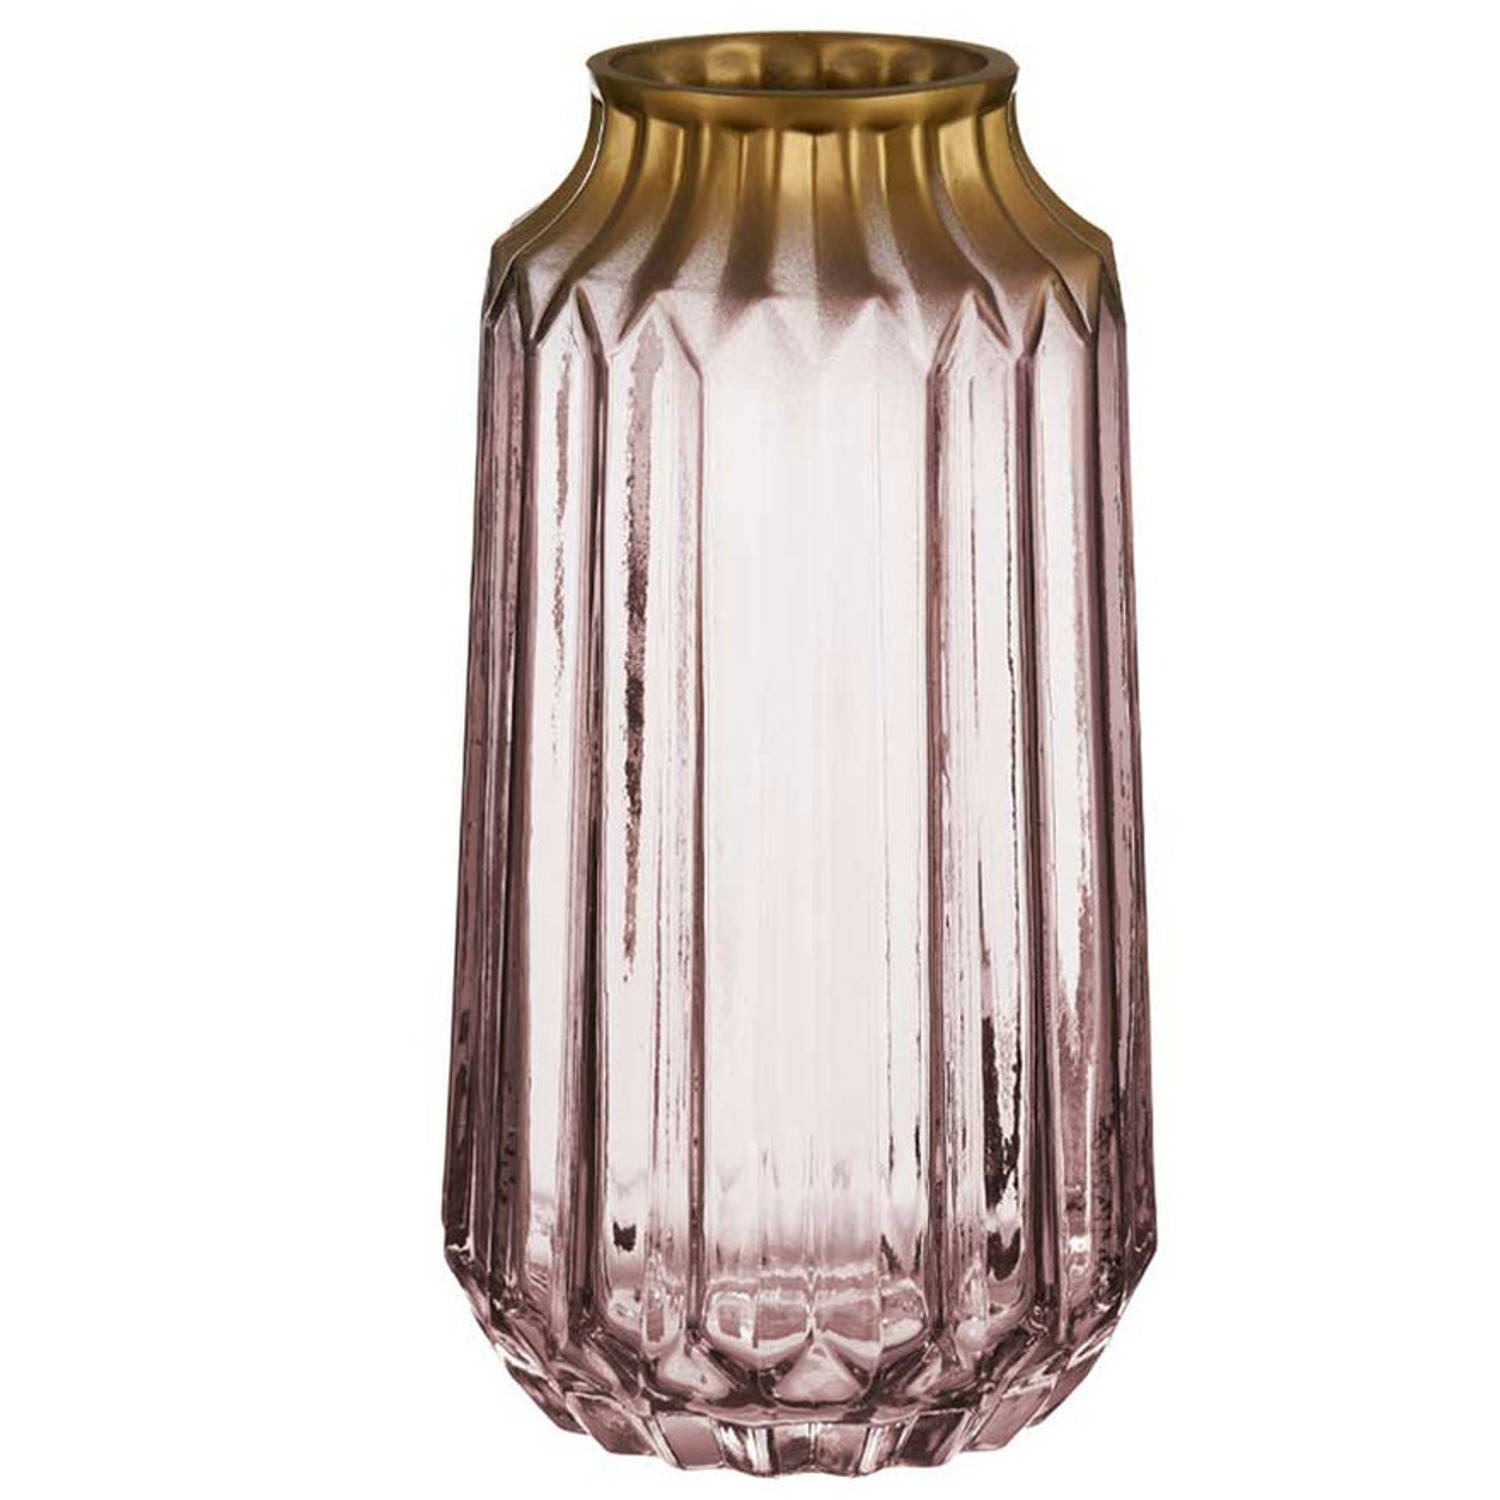 Bloemenvaas luxe deco glas roze transparant-goud 13 x 23 cm Vazen